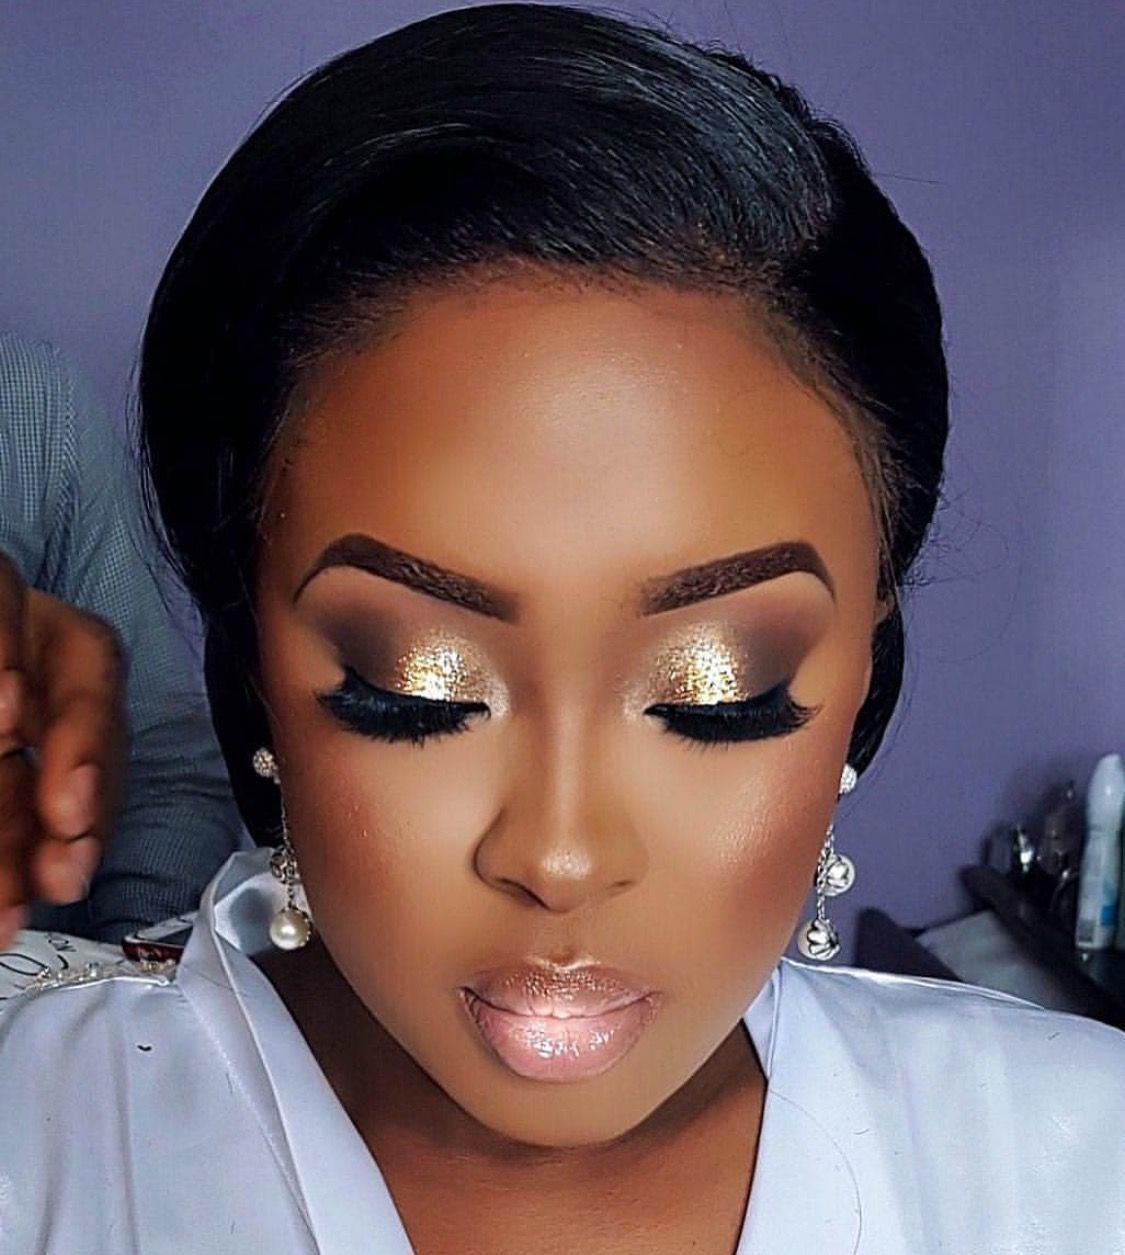 40 Best Makeup Ideas for Black Women -   15 wedding Makeup for black women ideas